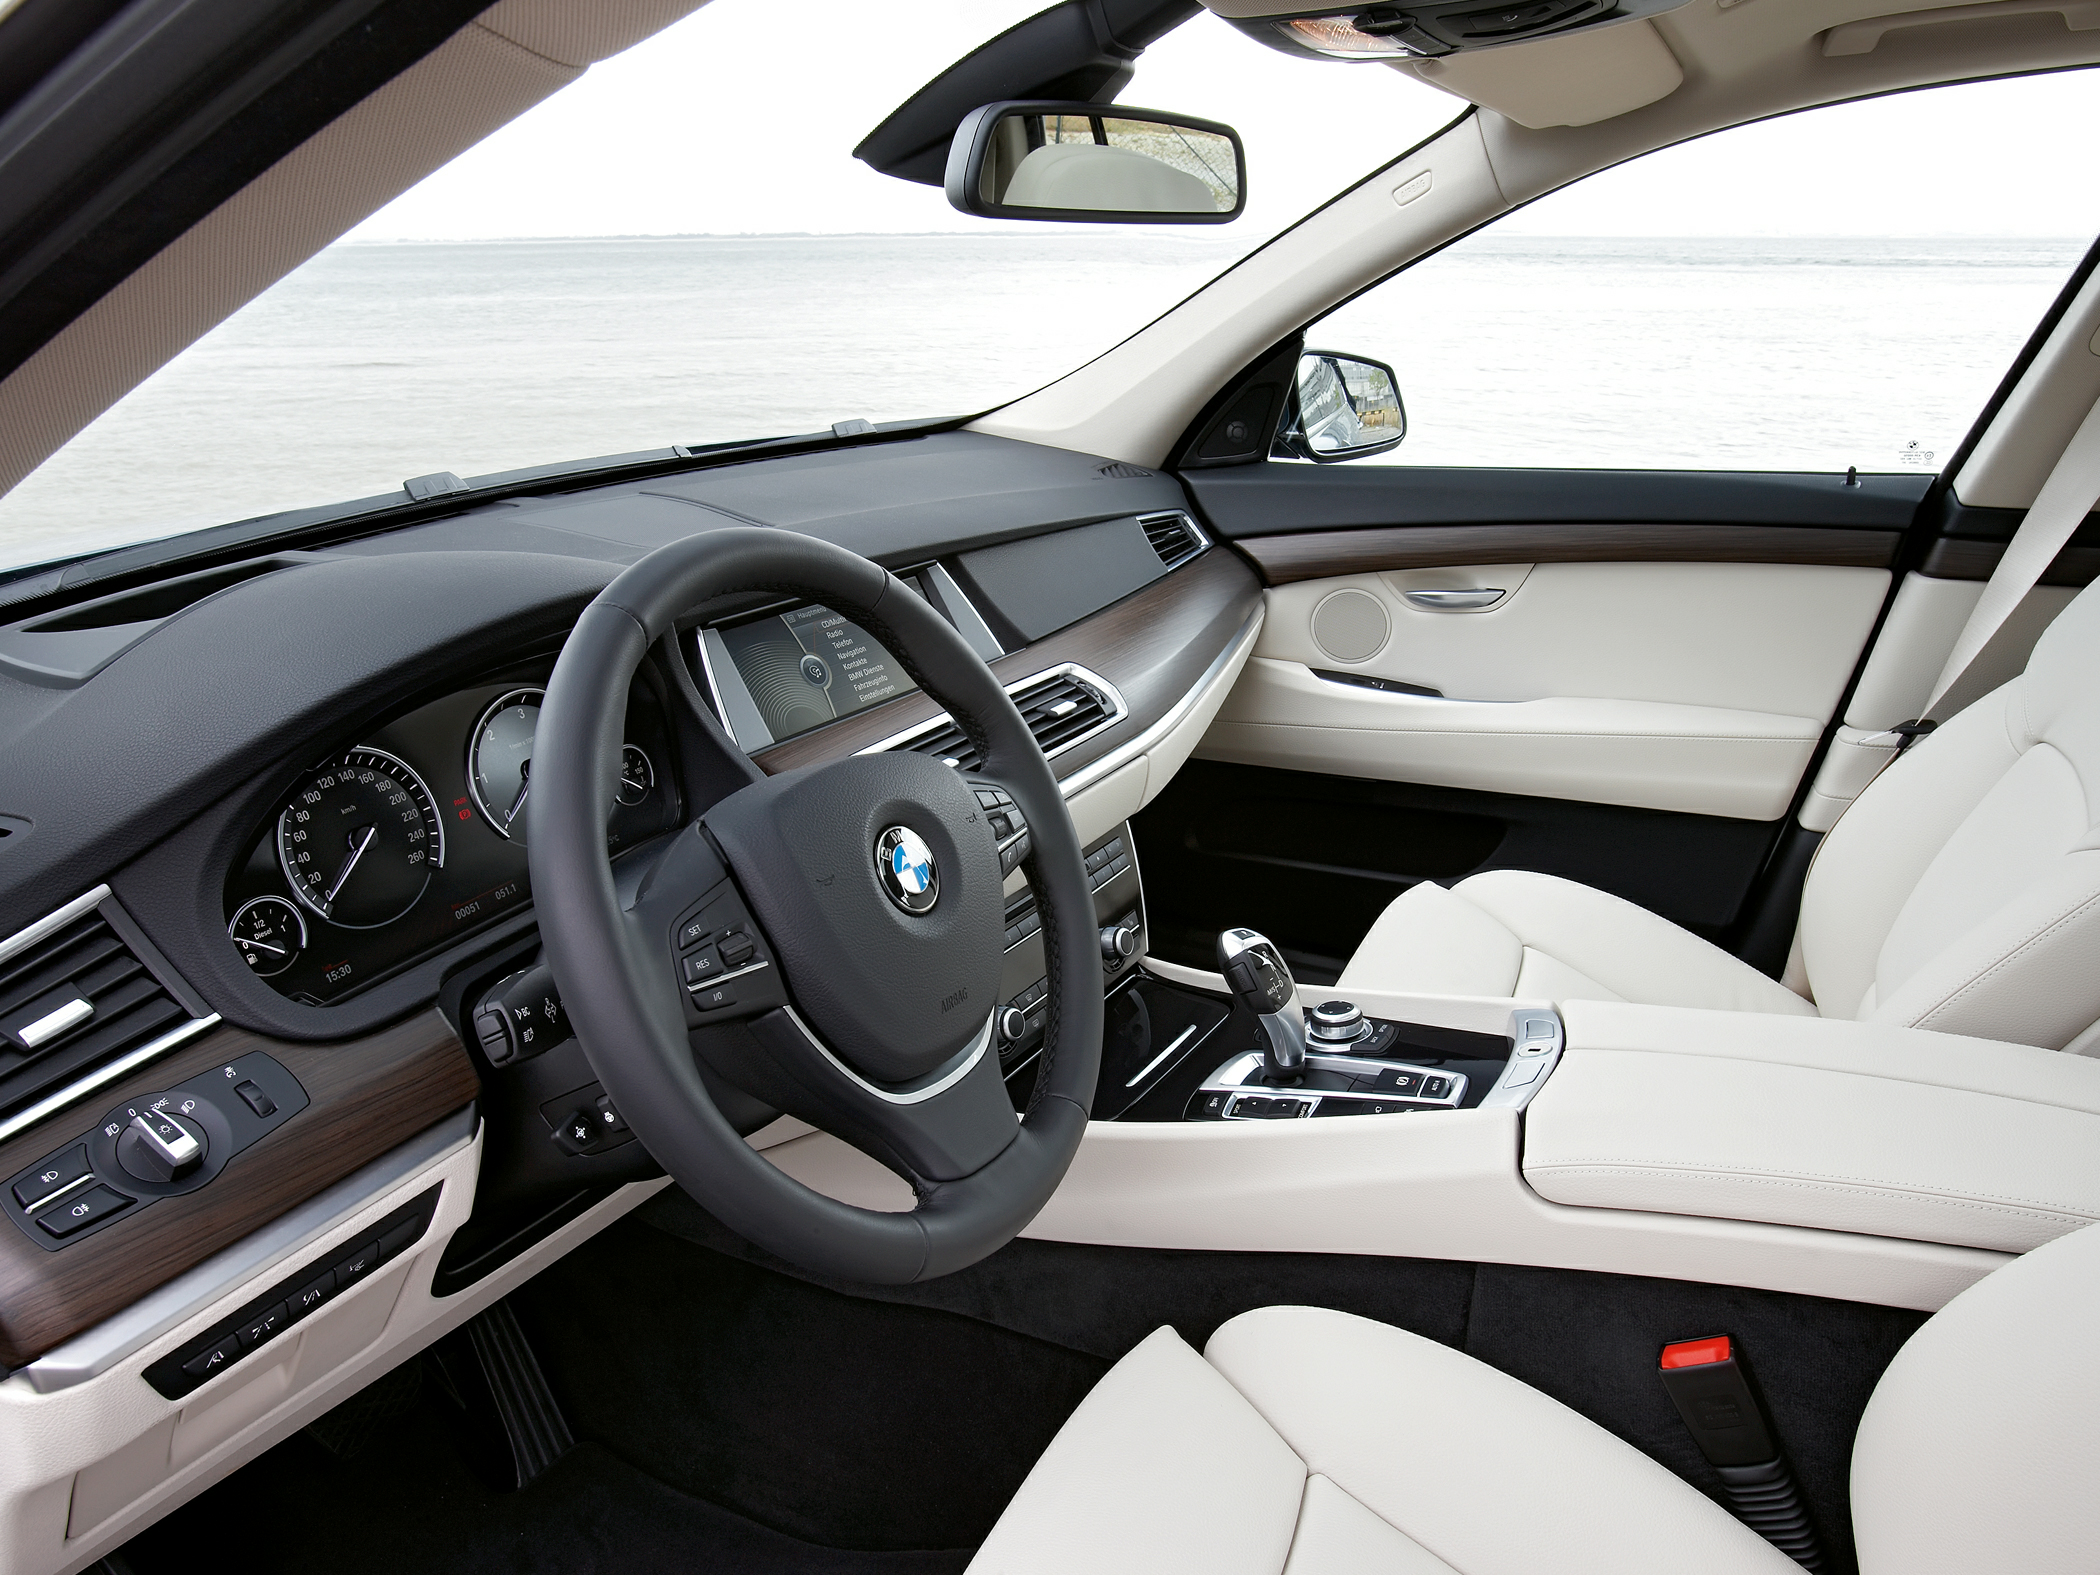 2013 BMW 535 Gran Turismo